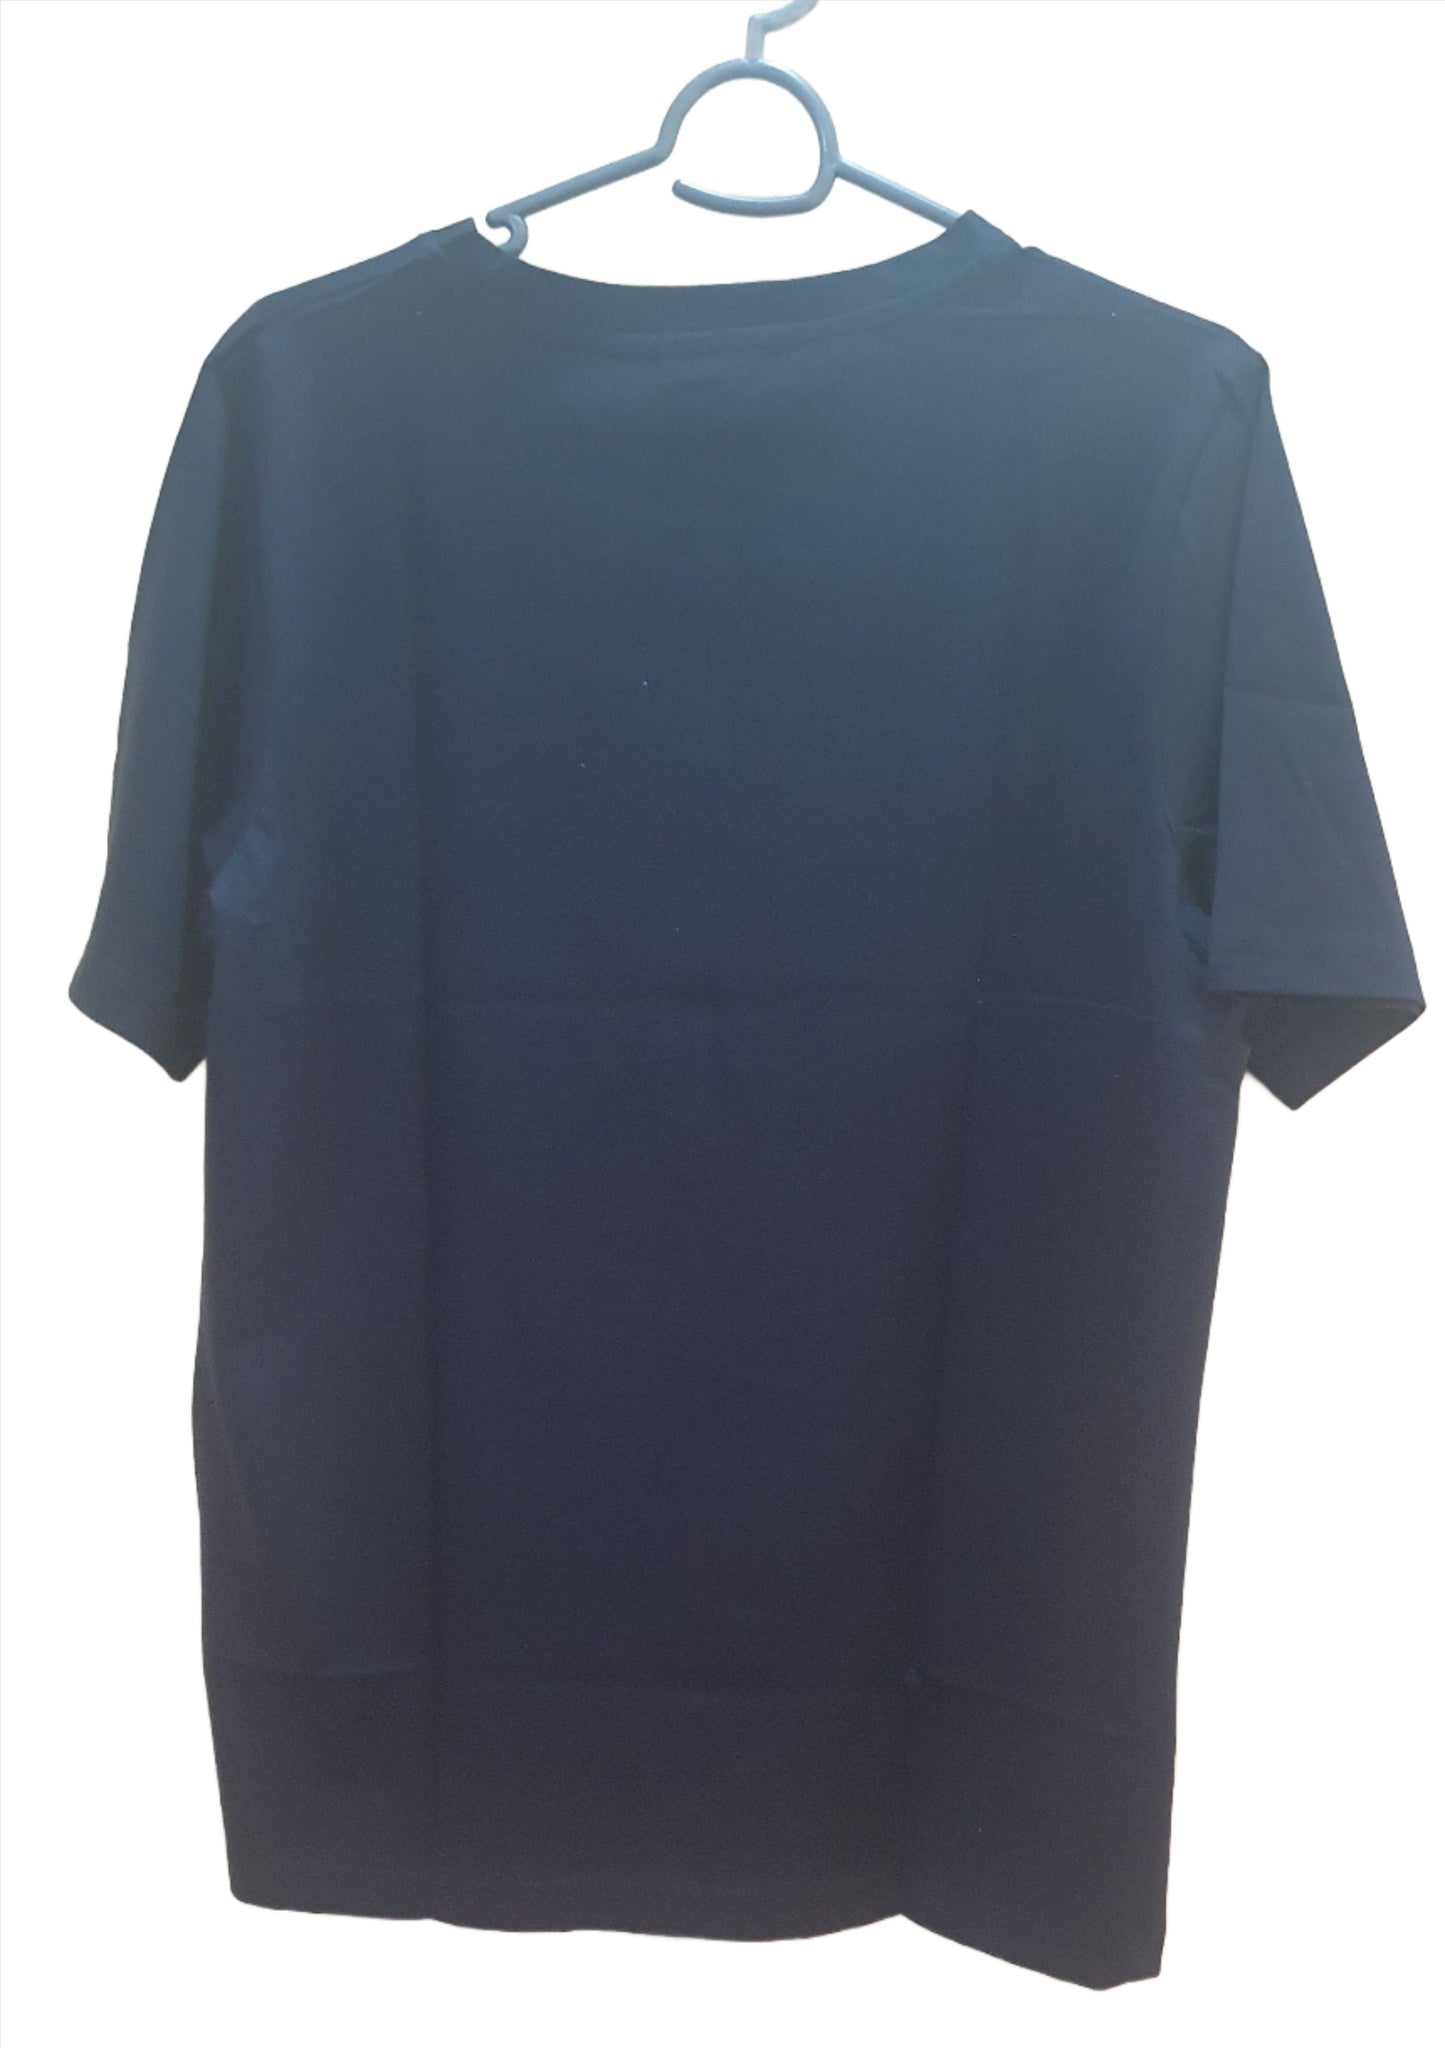 Dark Blue Colour Cotton Tshirt